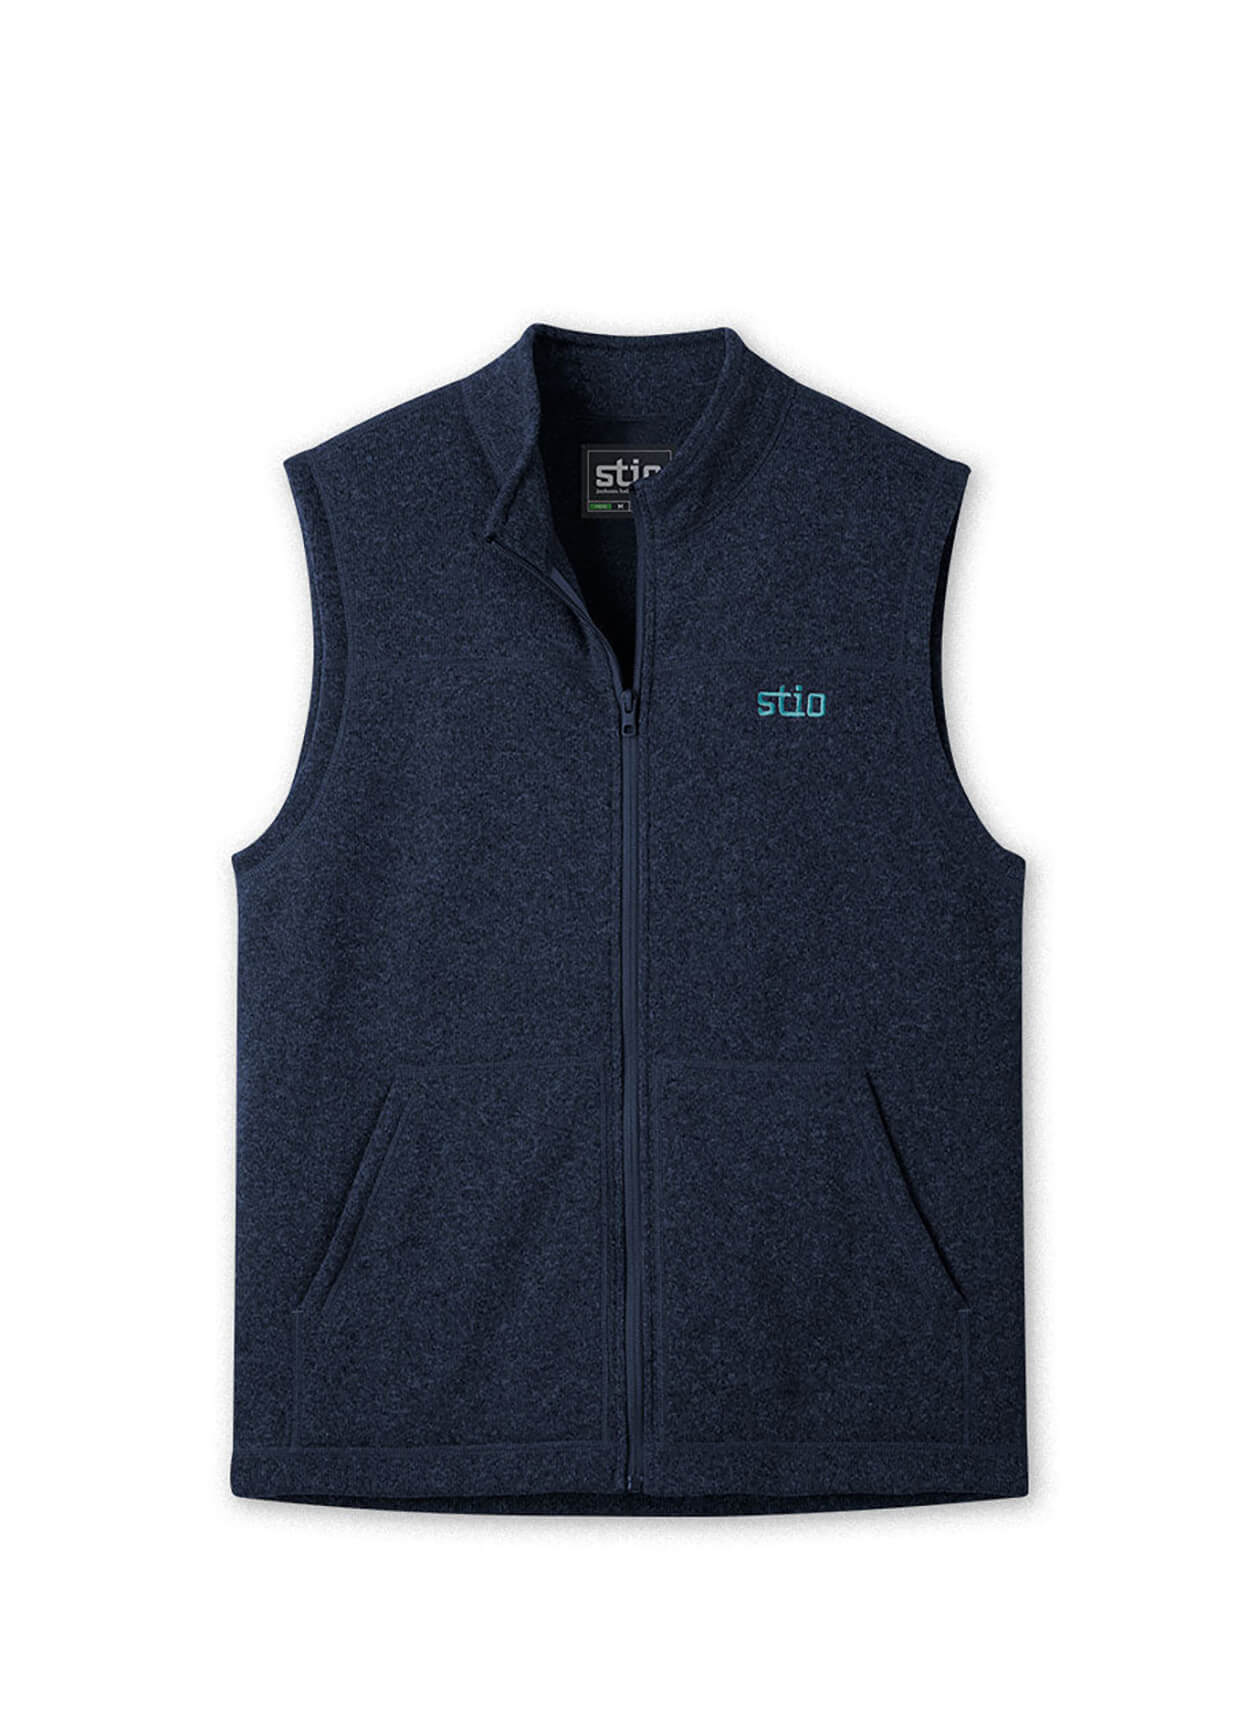 STIO 200050 - Men's Wilcox Fleece Vest